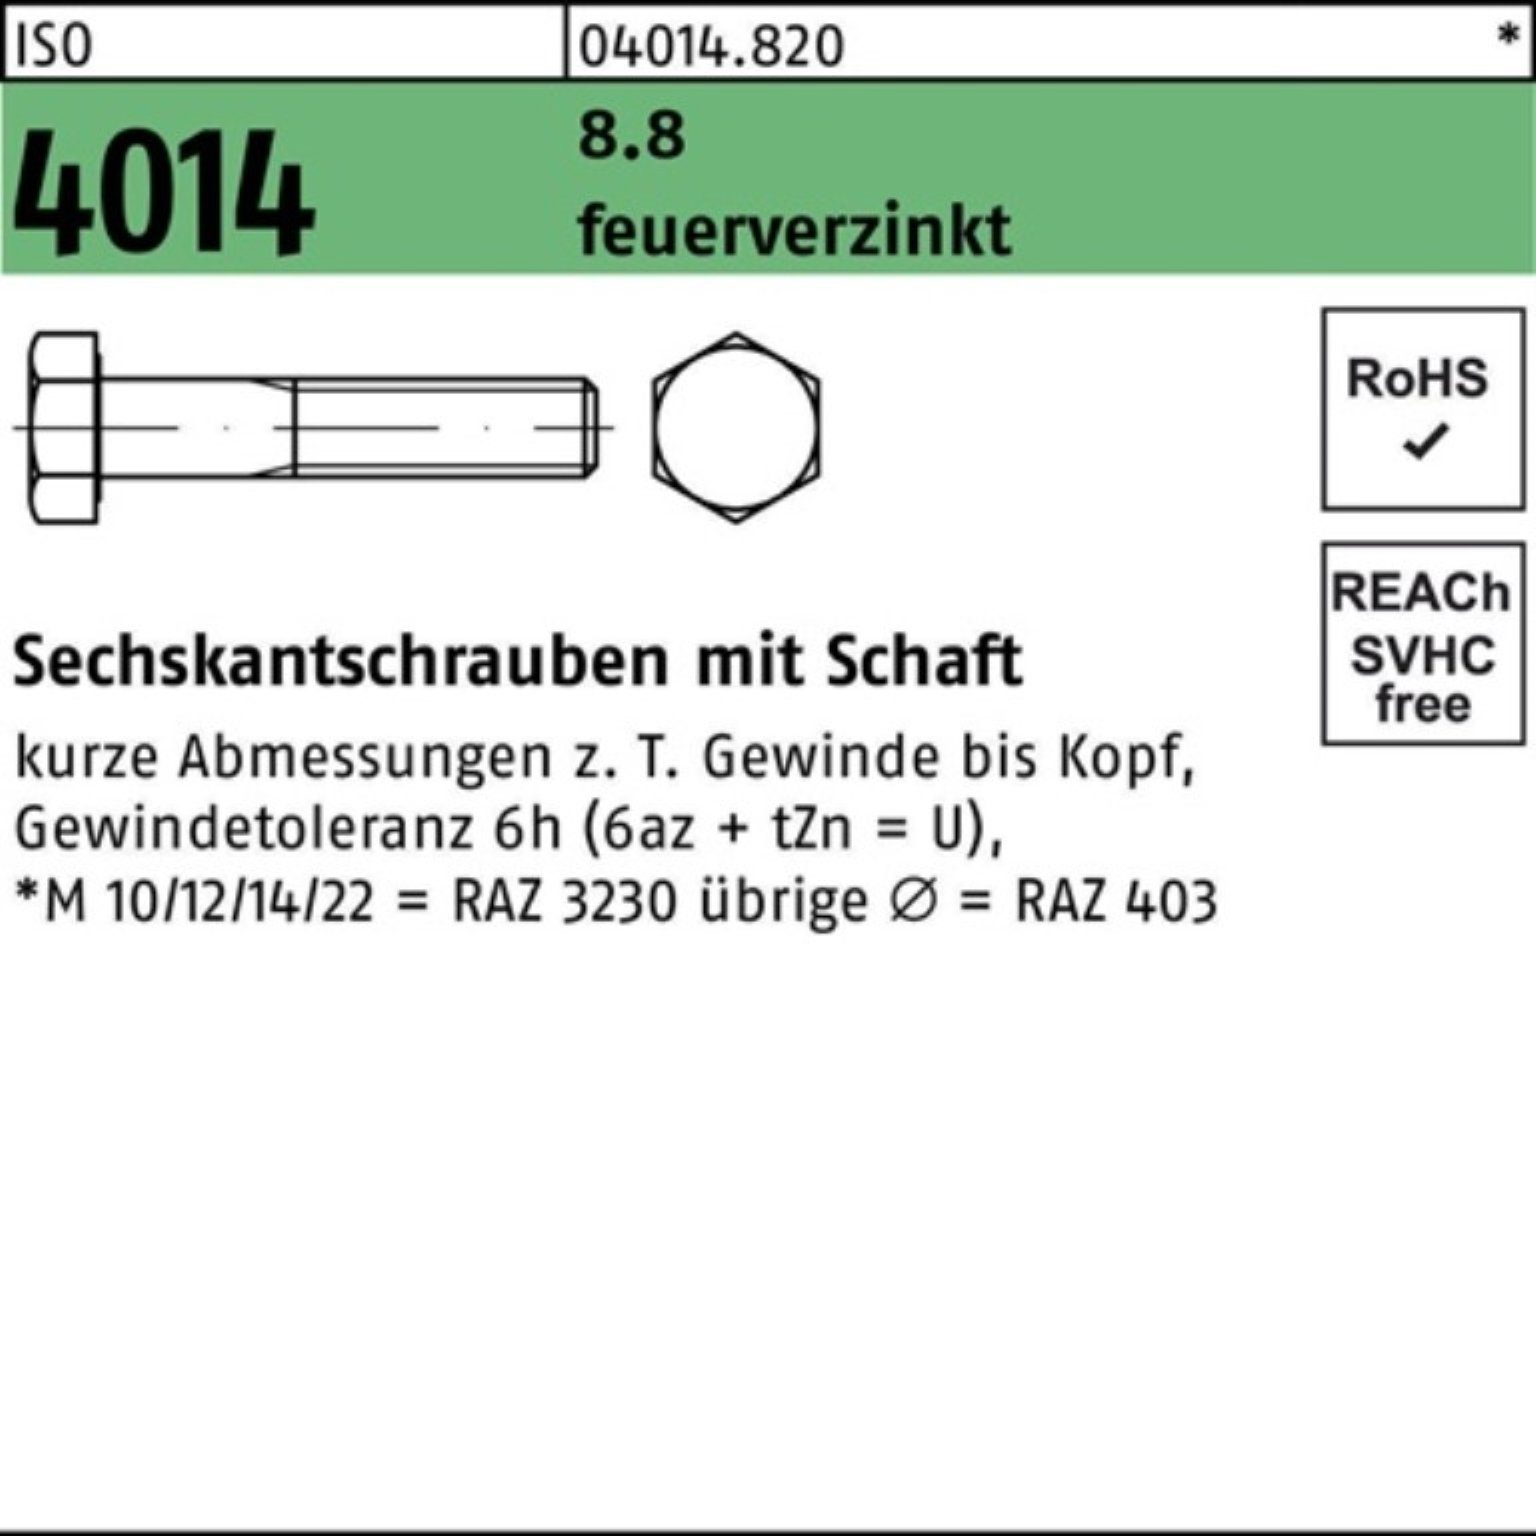 Bufab Sechskantschraube 100er Pack Sechskantschraube ISO 4014 Schaft M24x 110 8.8 feuerverz. 1